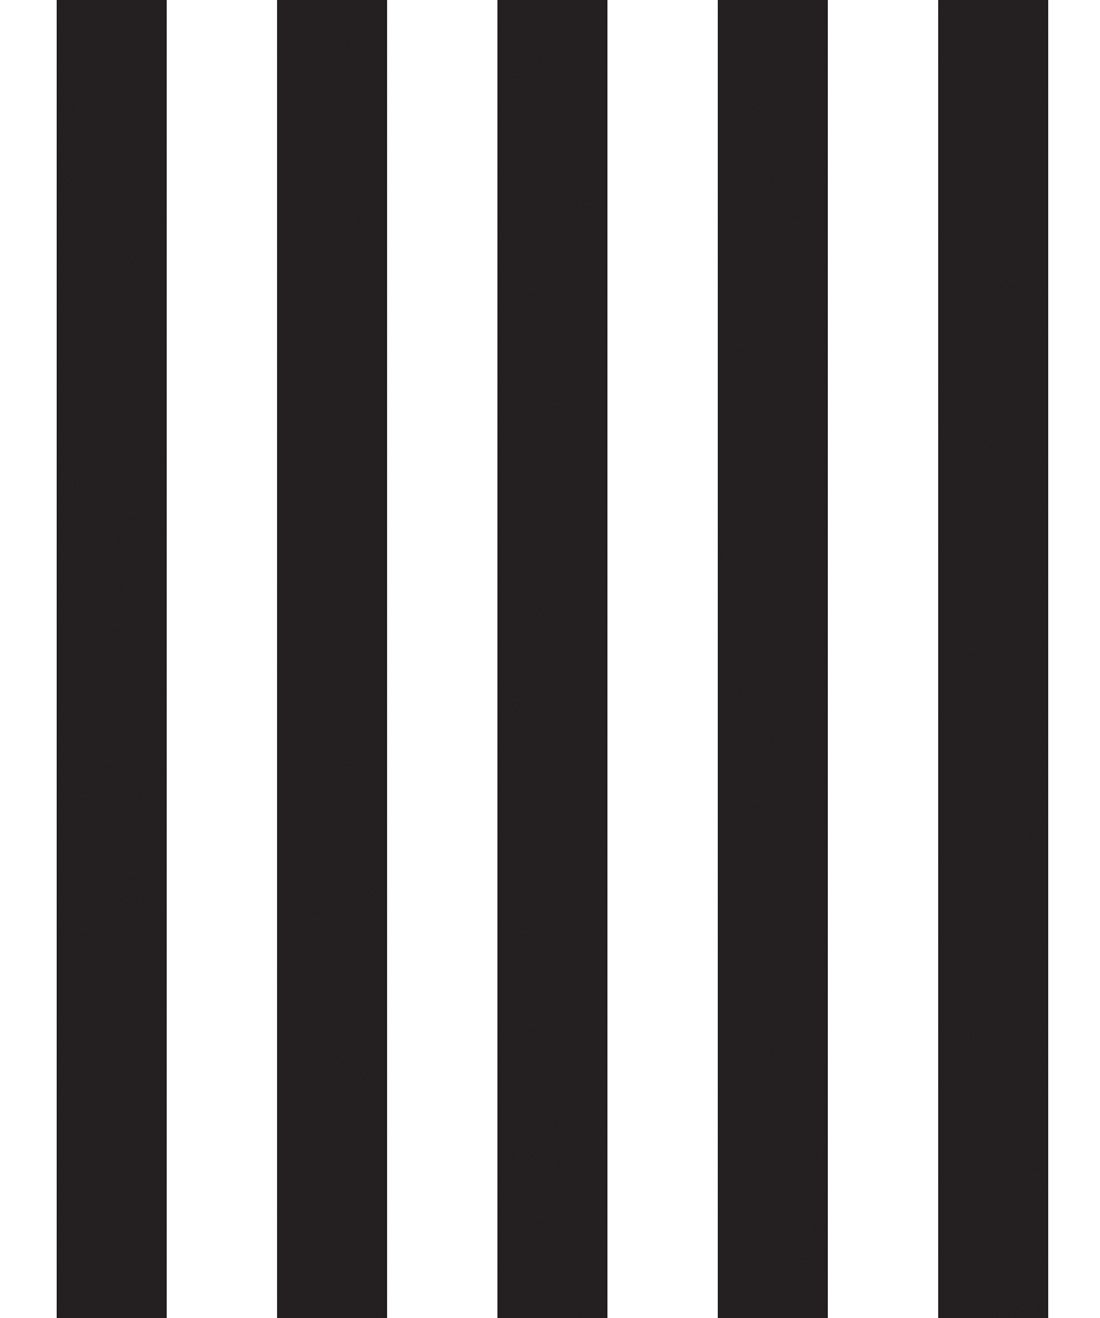 Black & White Stripe Wallpaper, Bold Yet Elegant